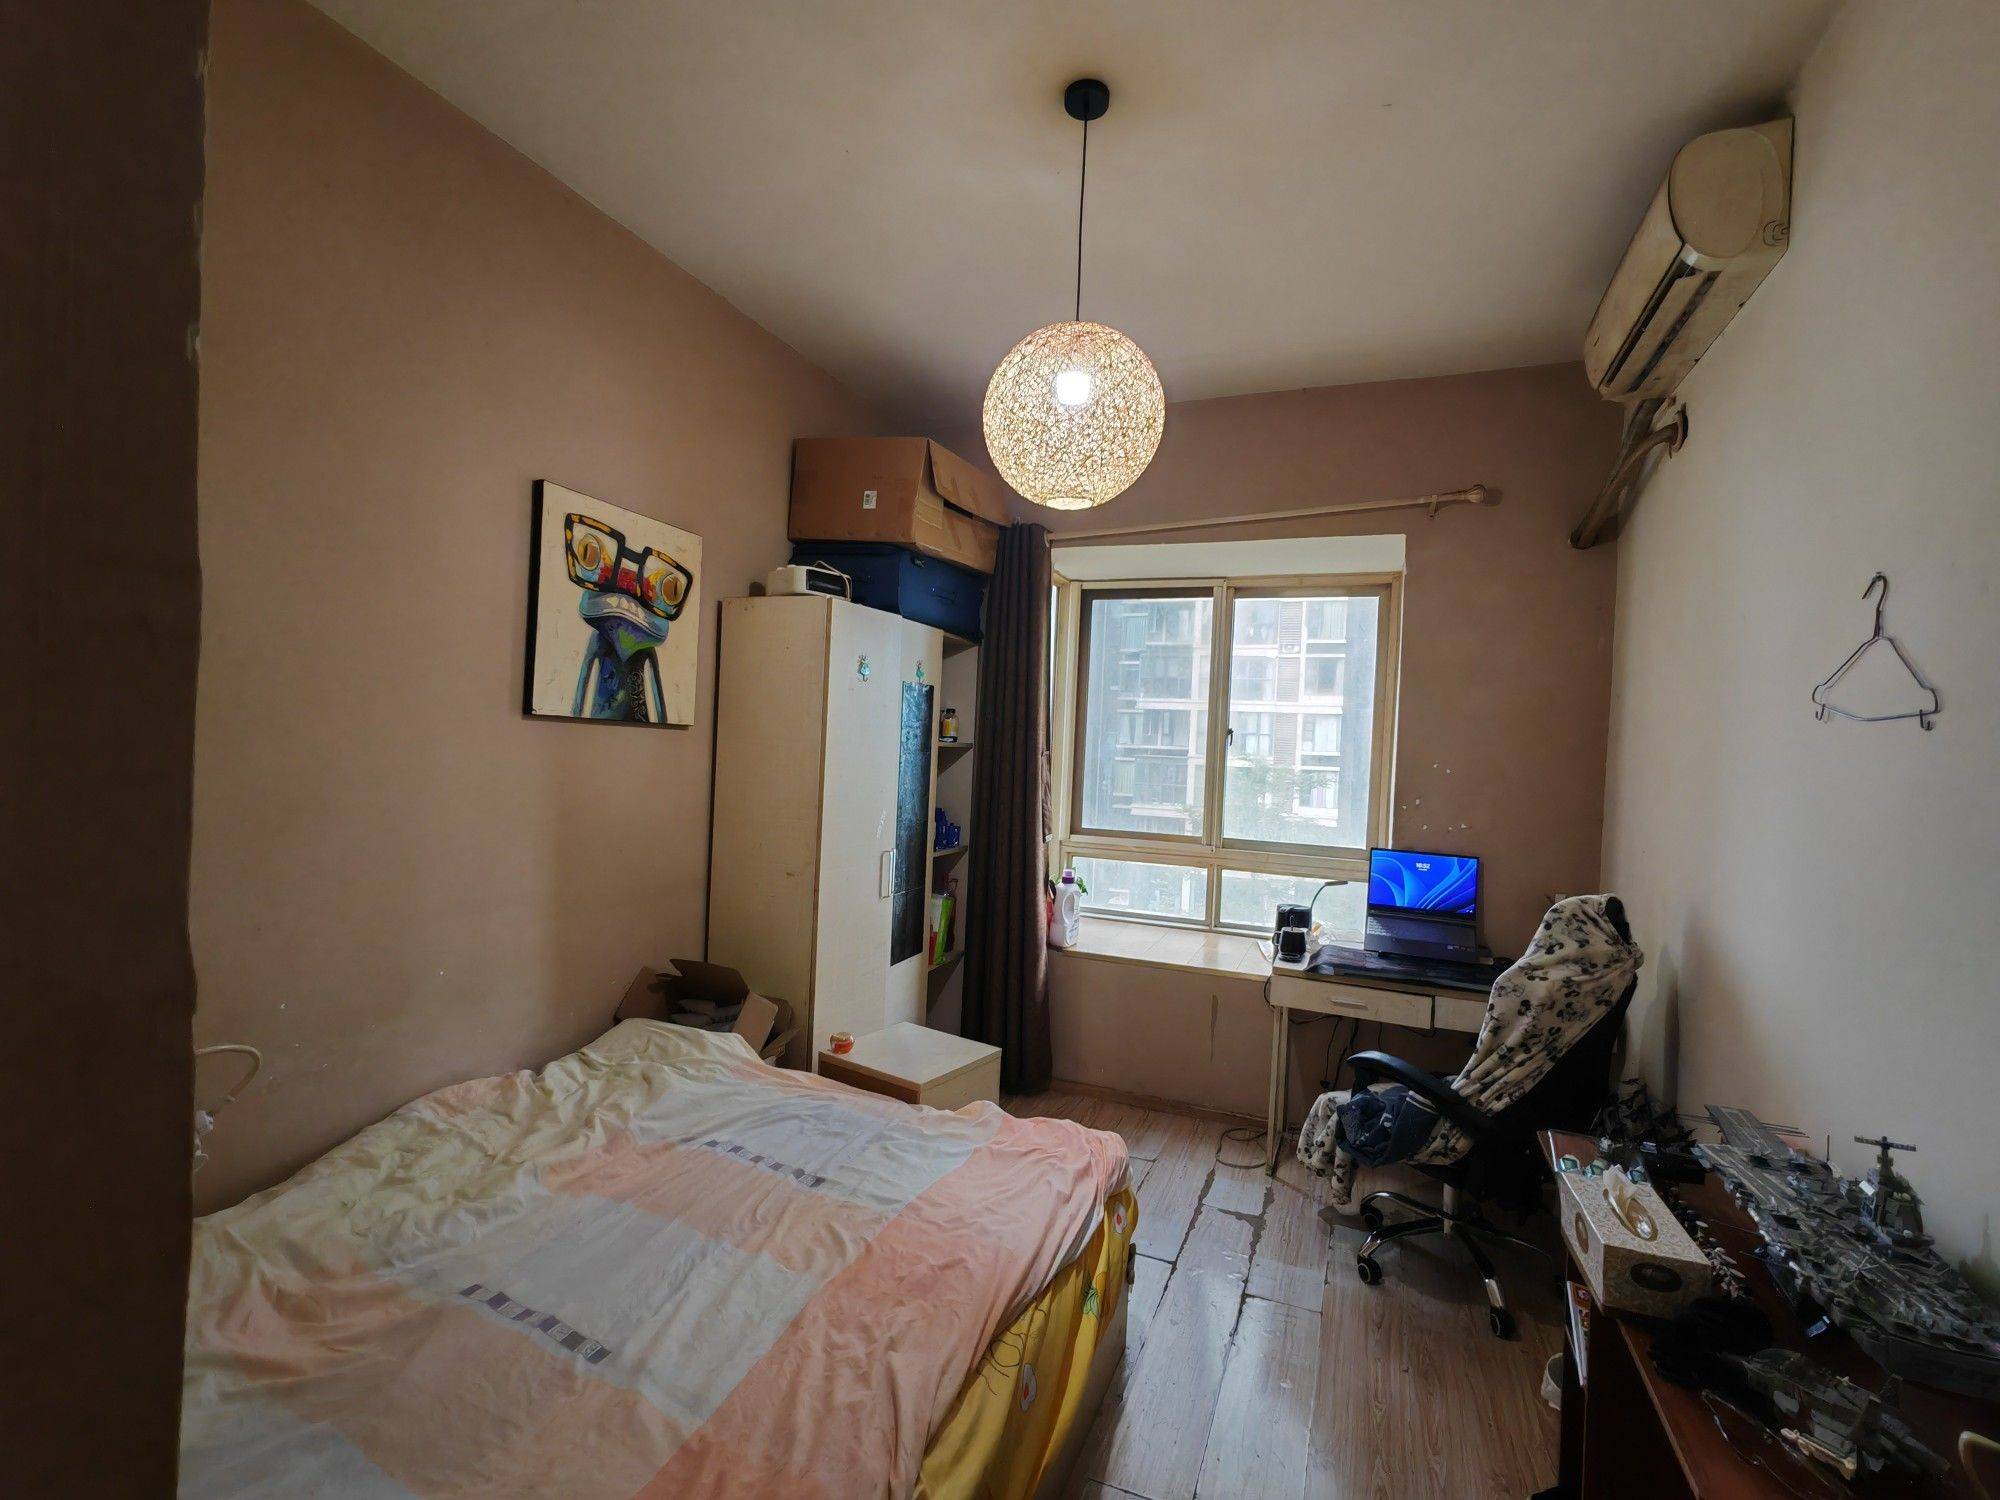 Chengdu-Shuangliu-Cozy Home,Hustle & Bustle,Chilled